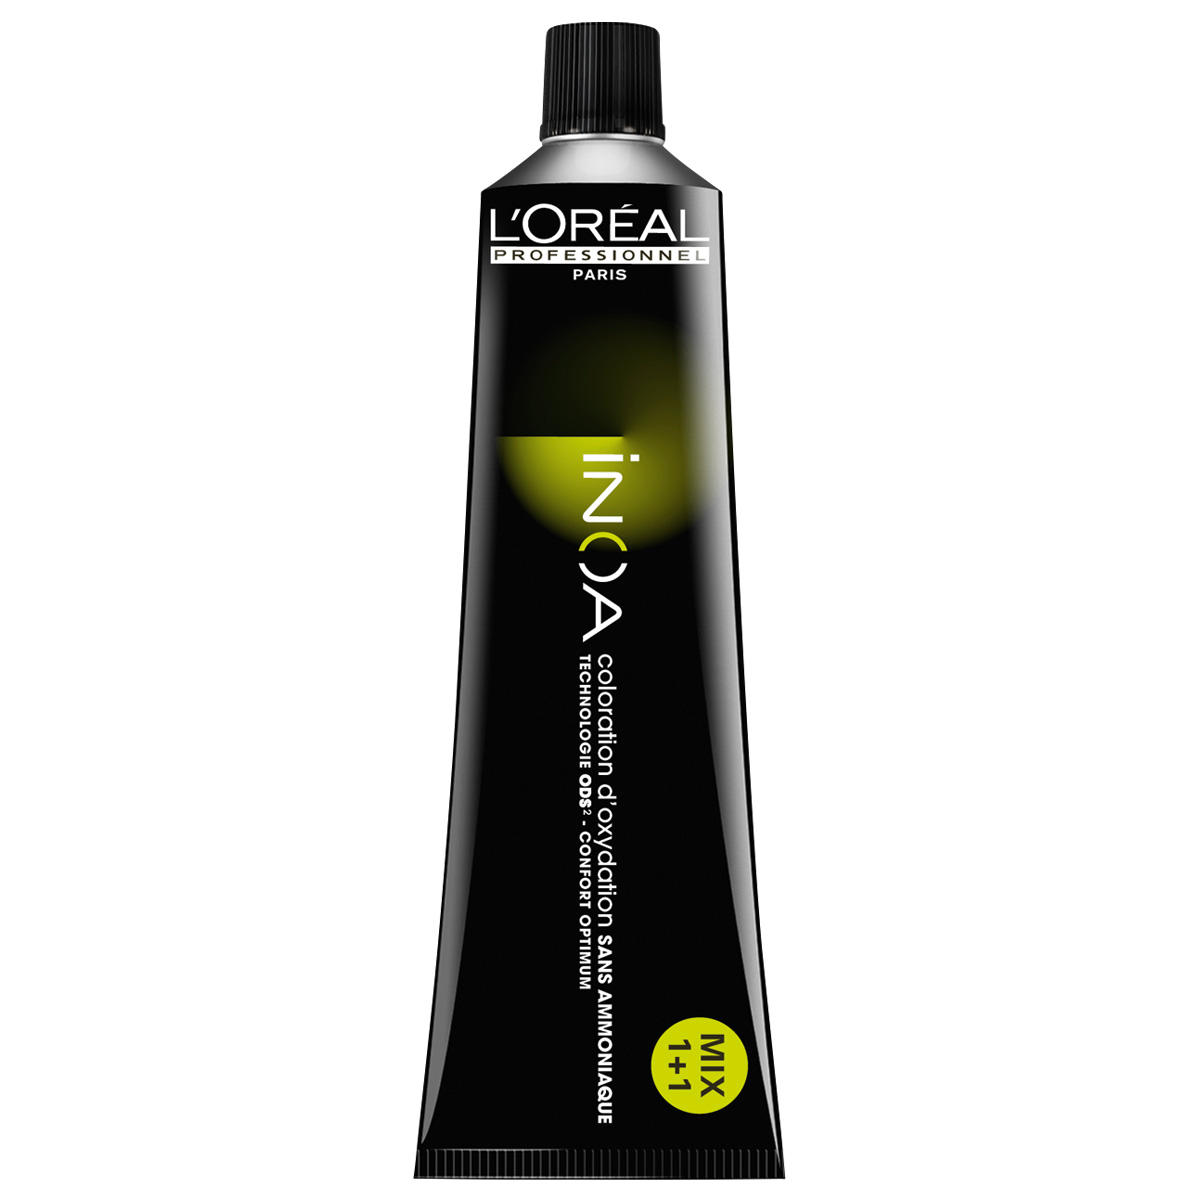 L'Oréal Professionnel Paris Coloration 5,4 Cobre marrón claro, tubo 60 ml